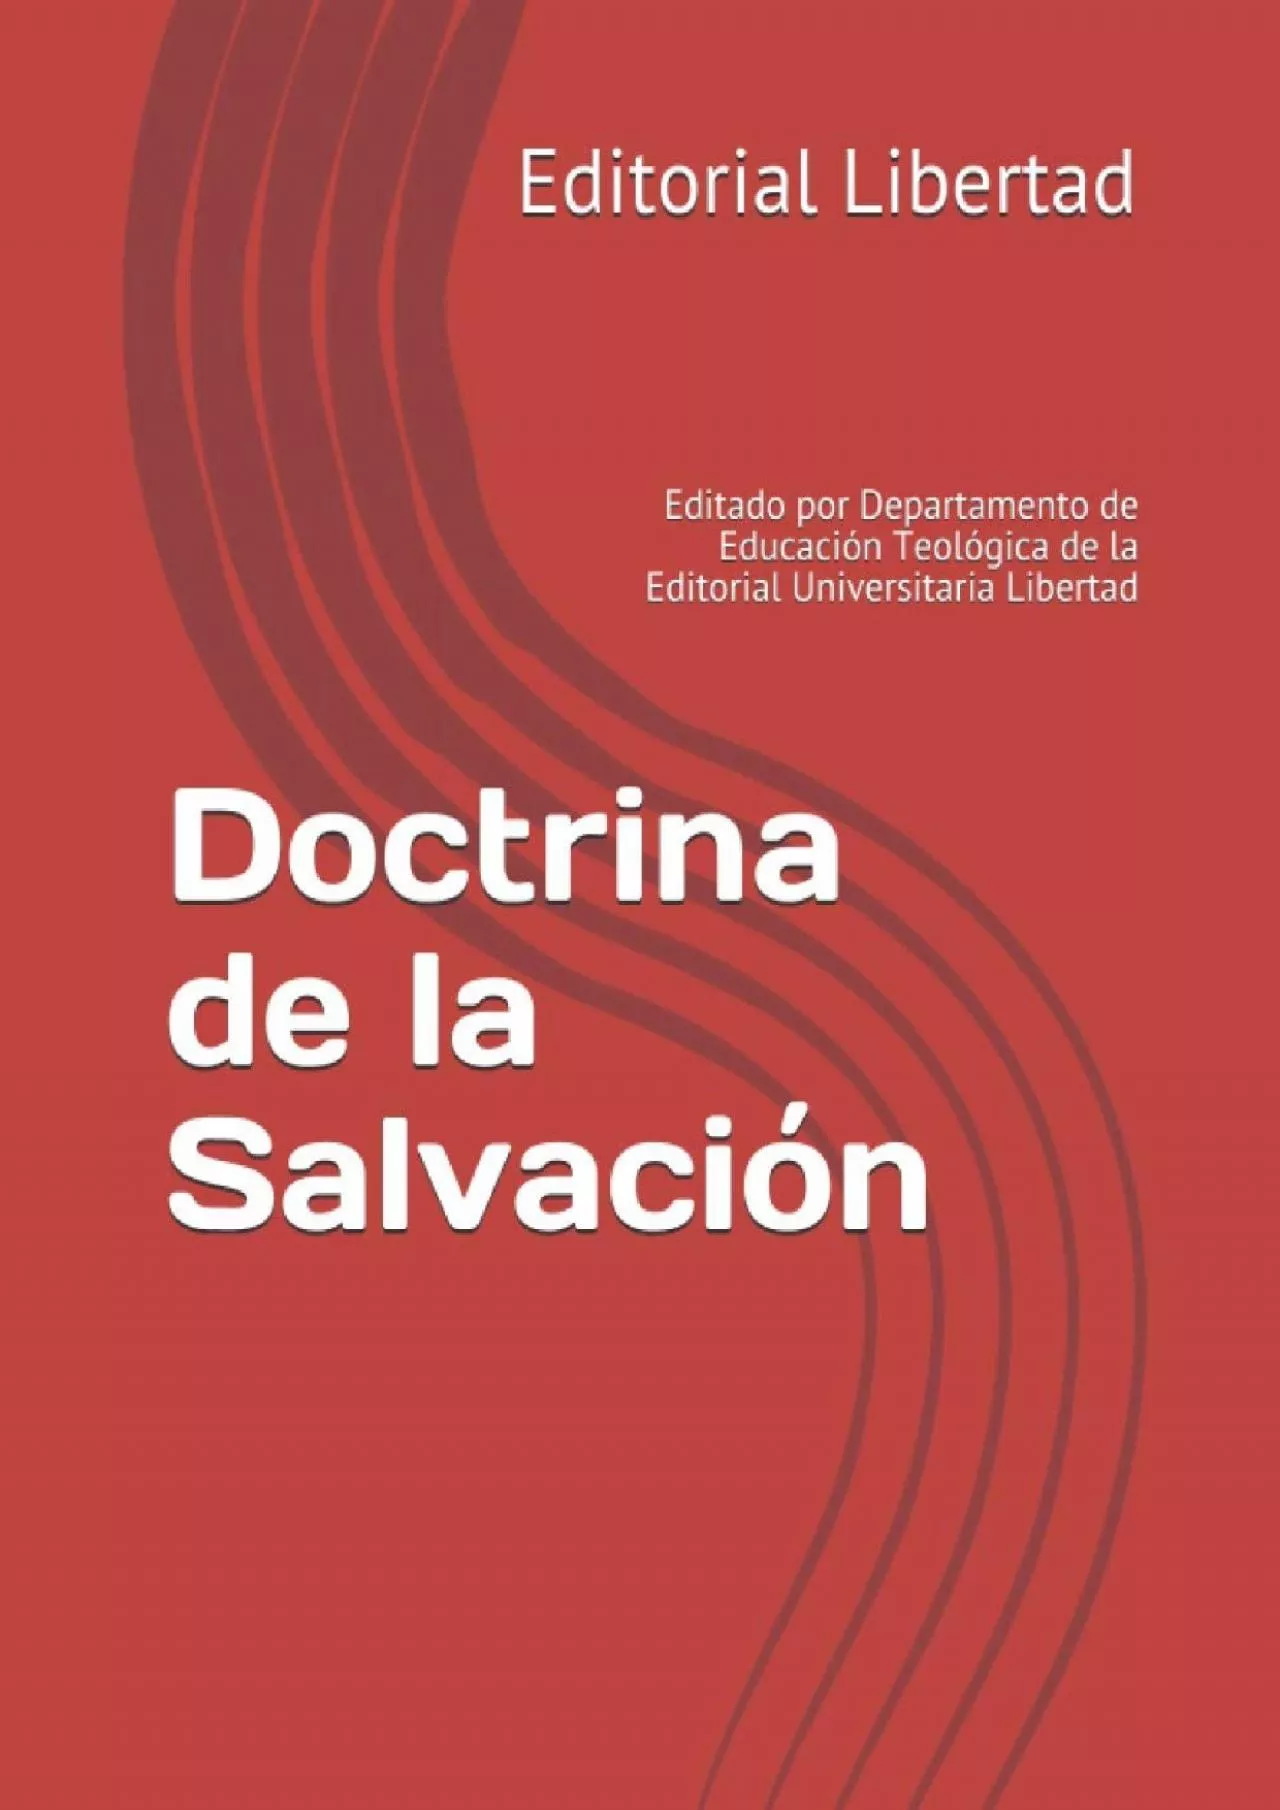 [EBOOK] Doctrina de la Salvación: Editado por Departamento de Educación Teológica de